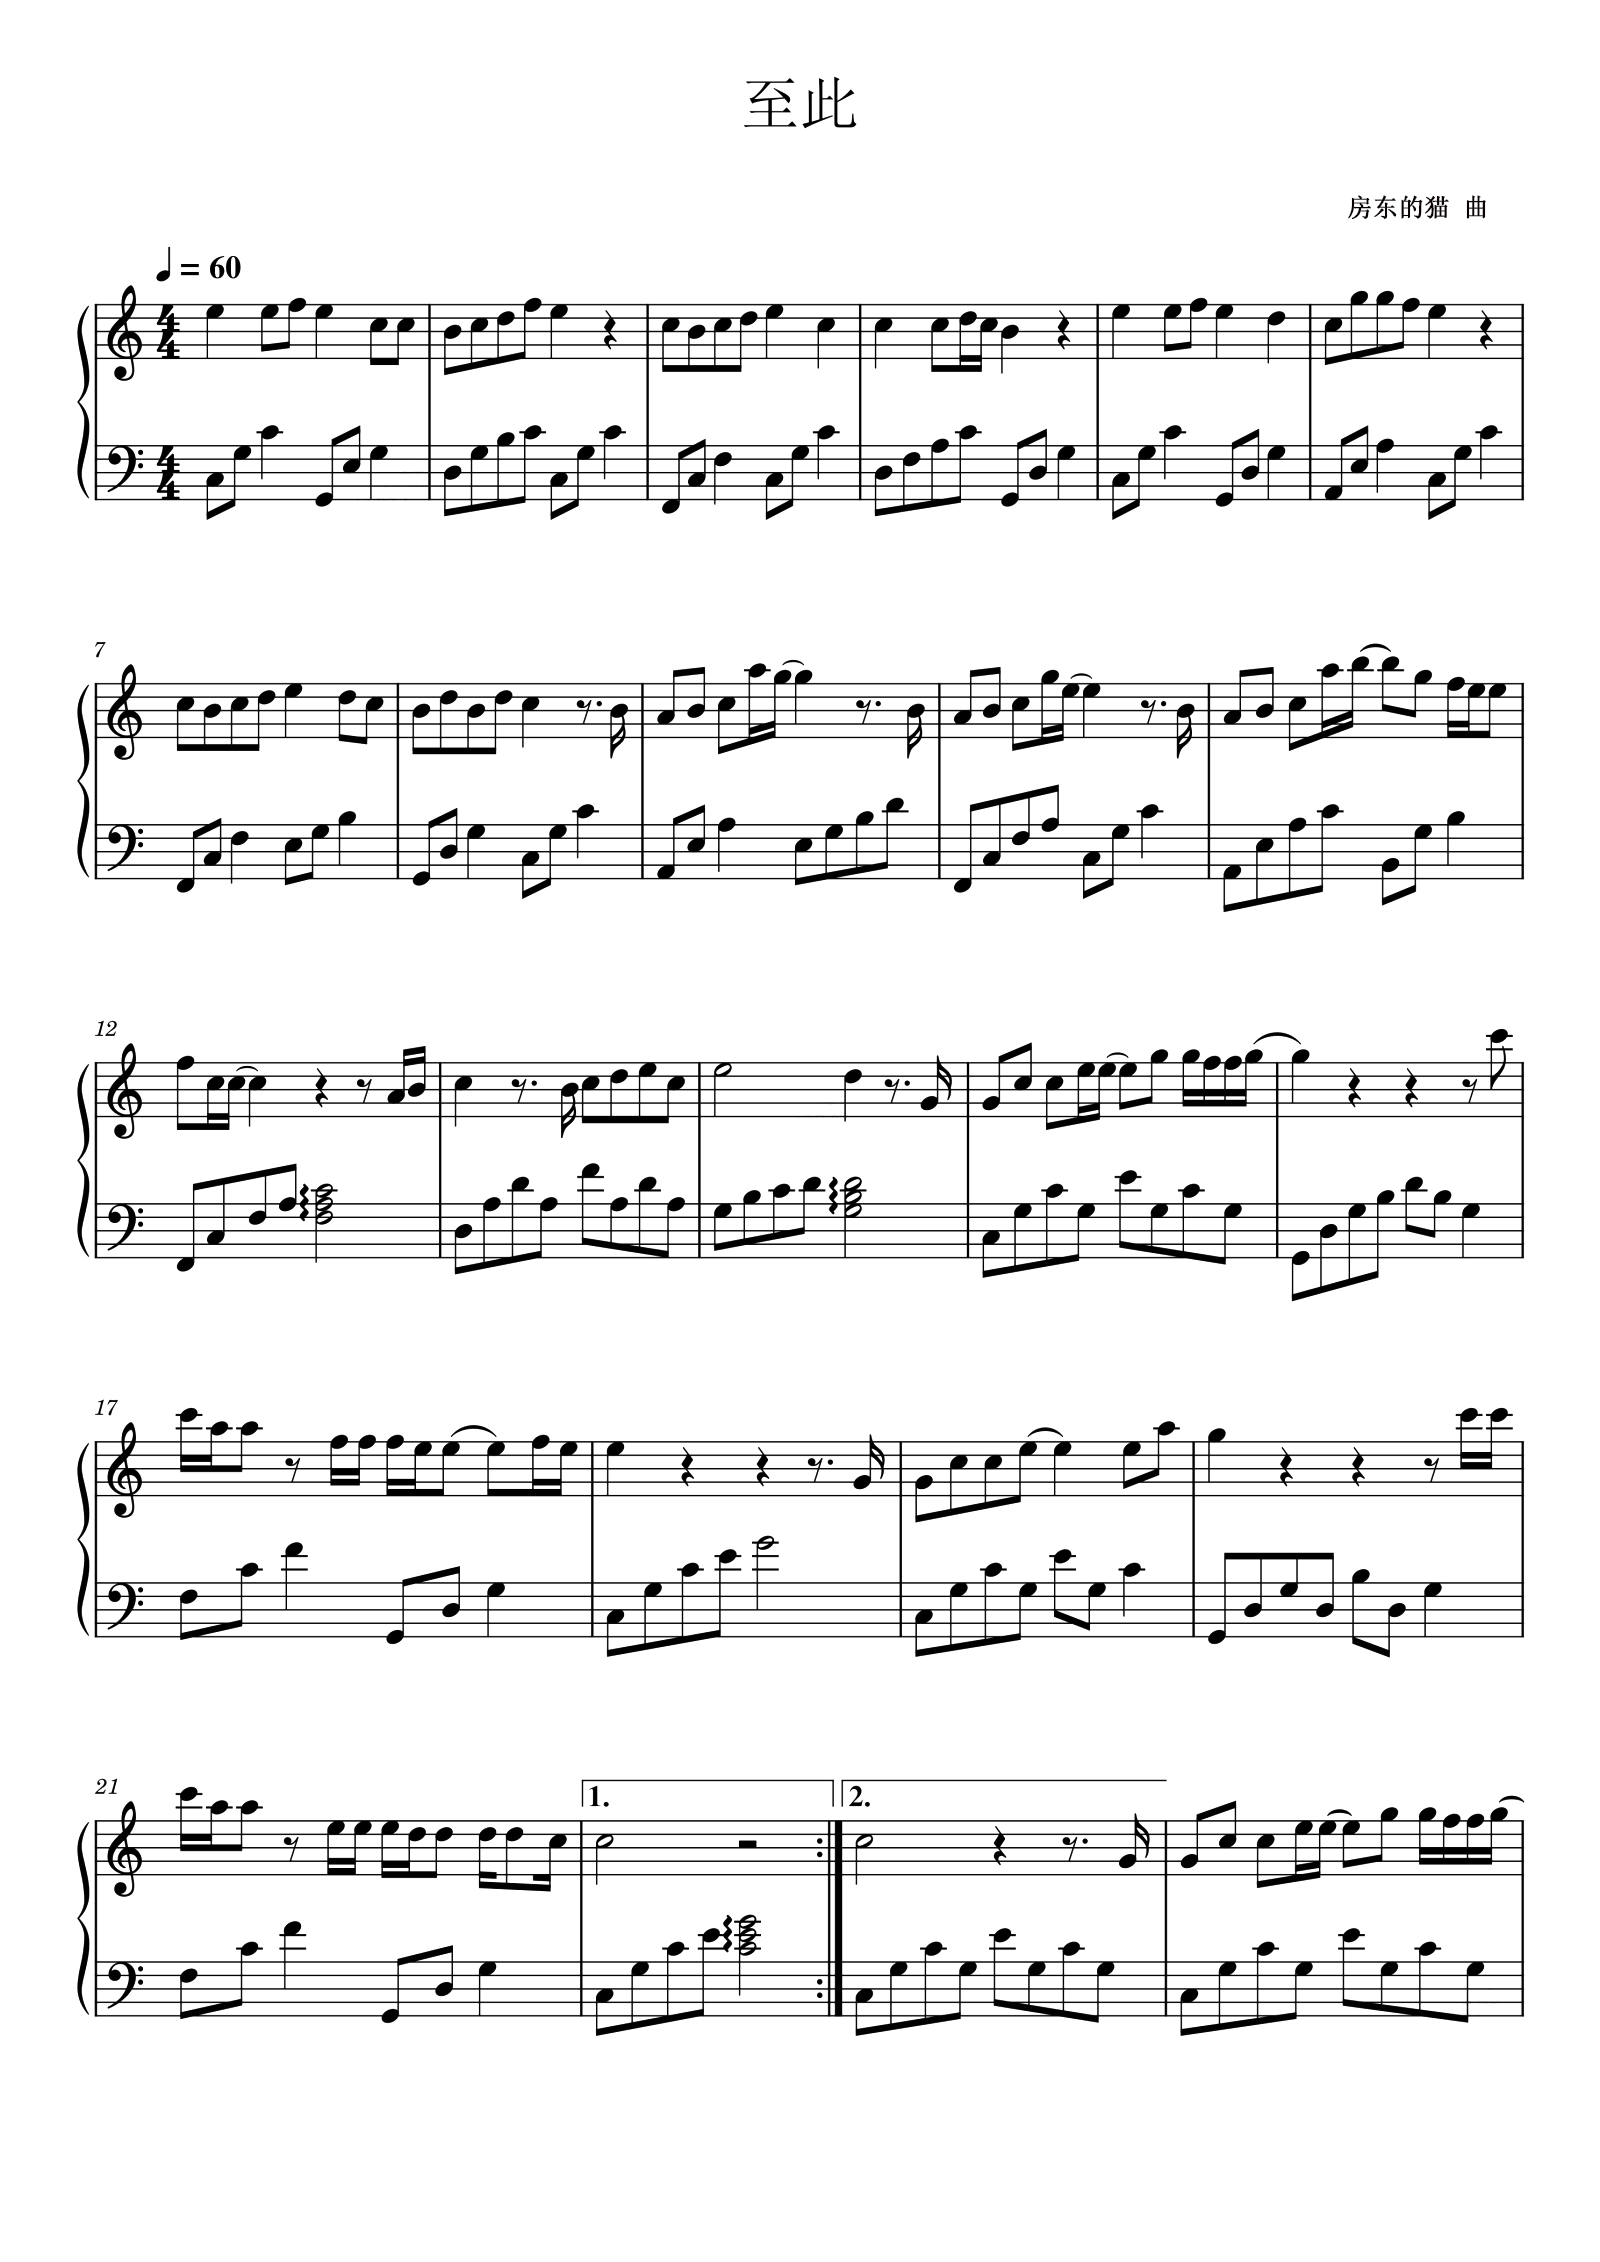 简化版《岁月忽已暮》钢琴谱 - 初学者最易上手 - 房东的猫带指法钢琴谱子 - 钢琴简谱